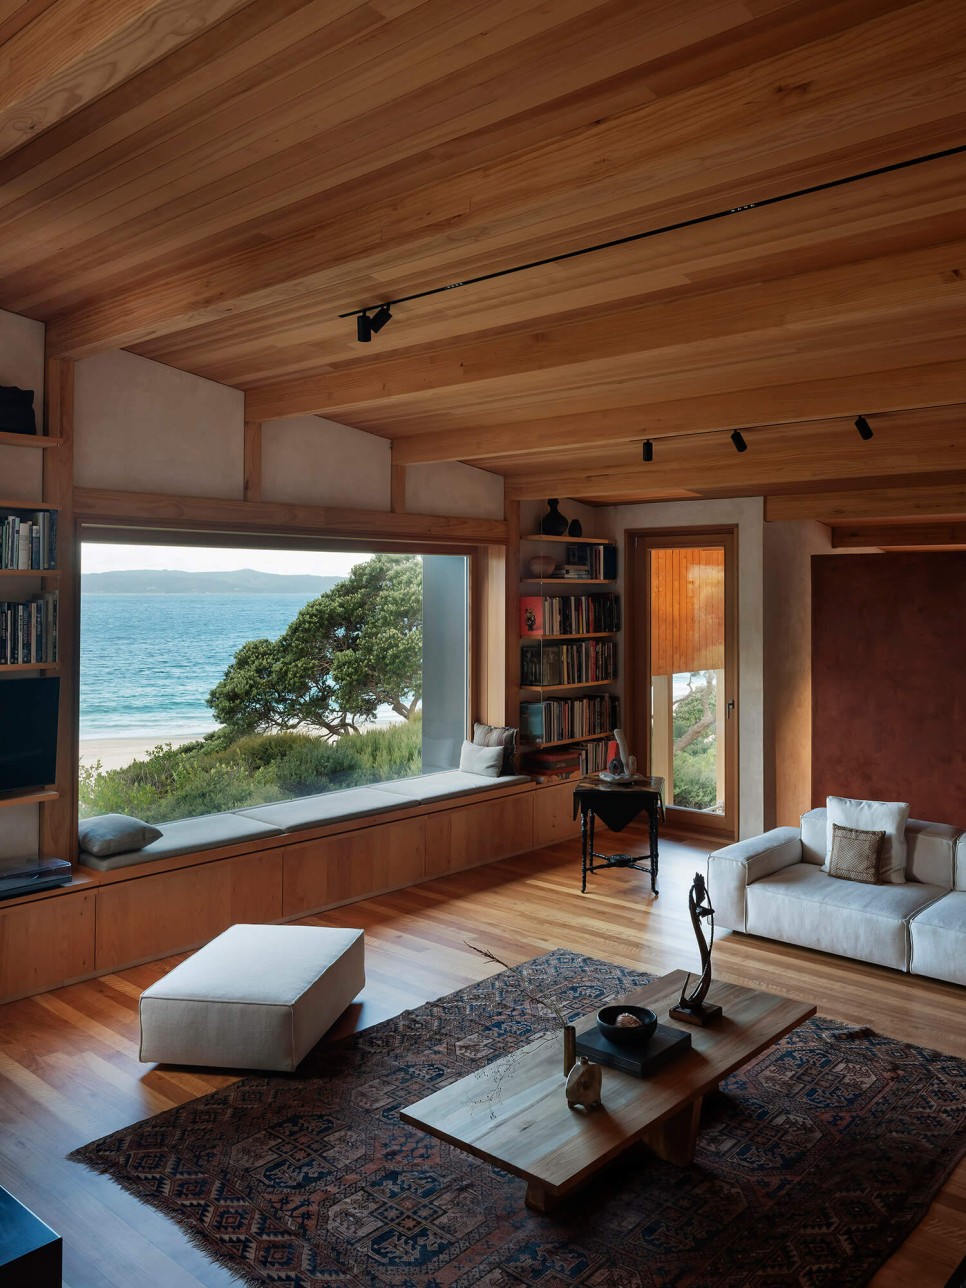 짓고 싶은 집! 풍경과 어우러진 고품질 디자인 주택, Waimataruru by Pac Studio